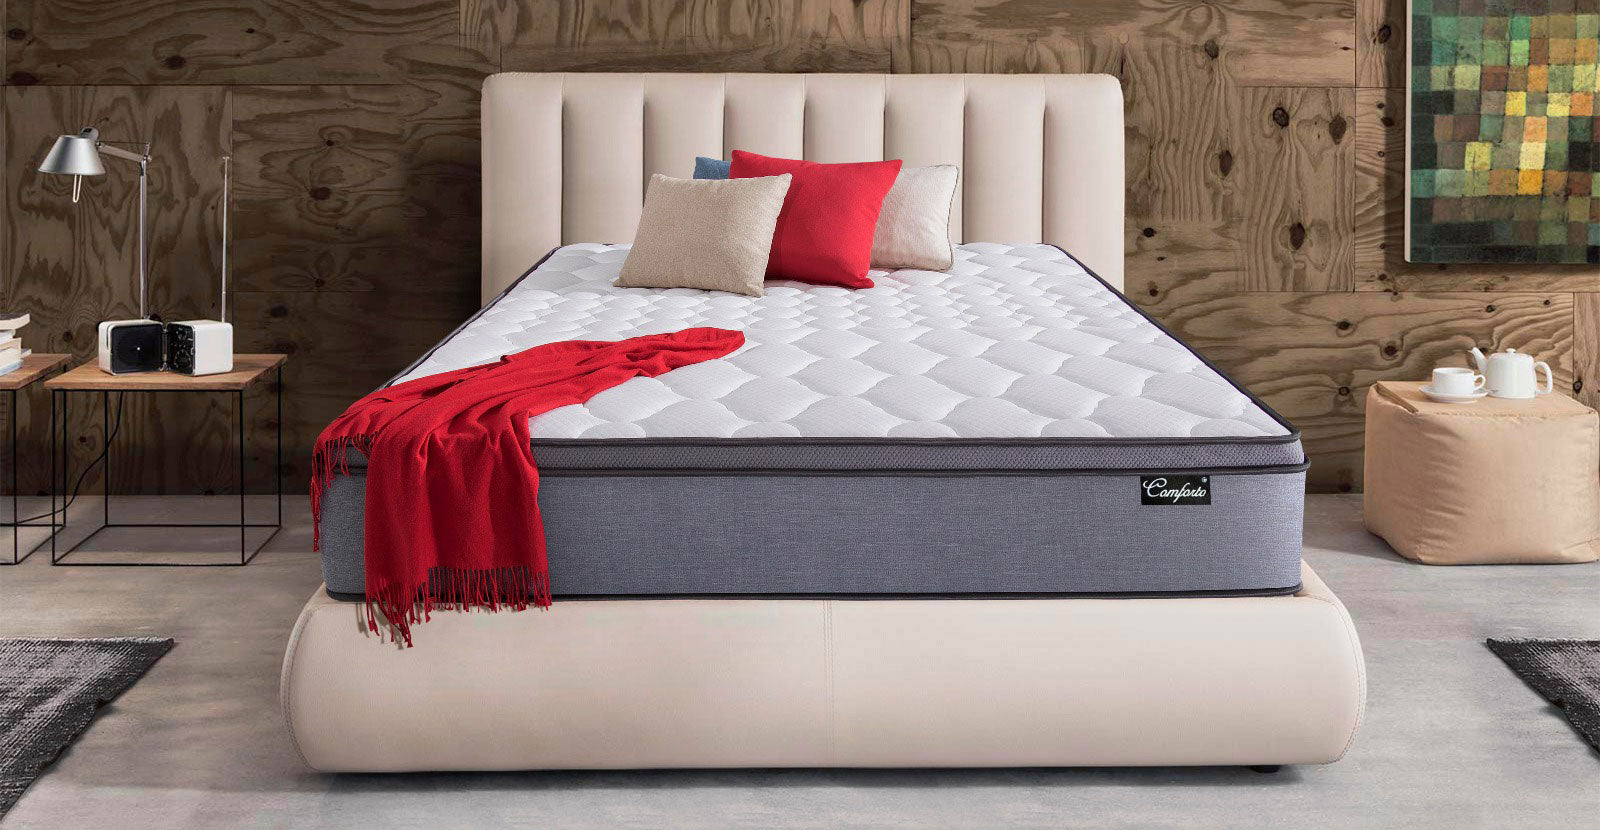 bed mattress online chennai